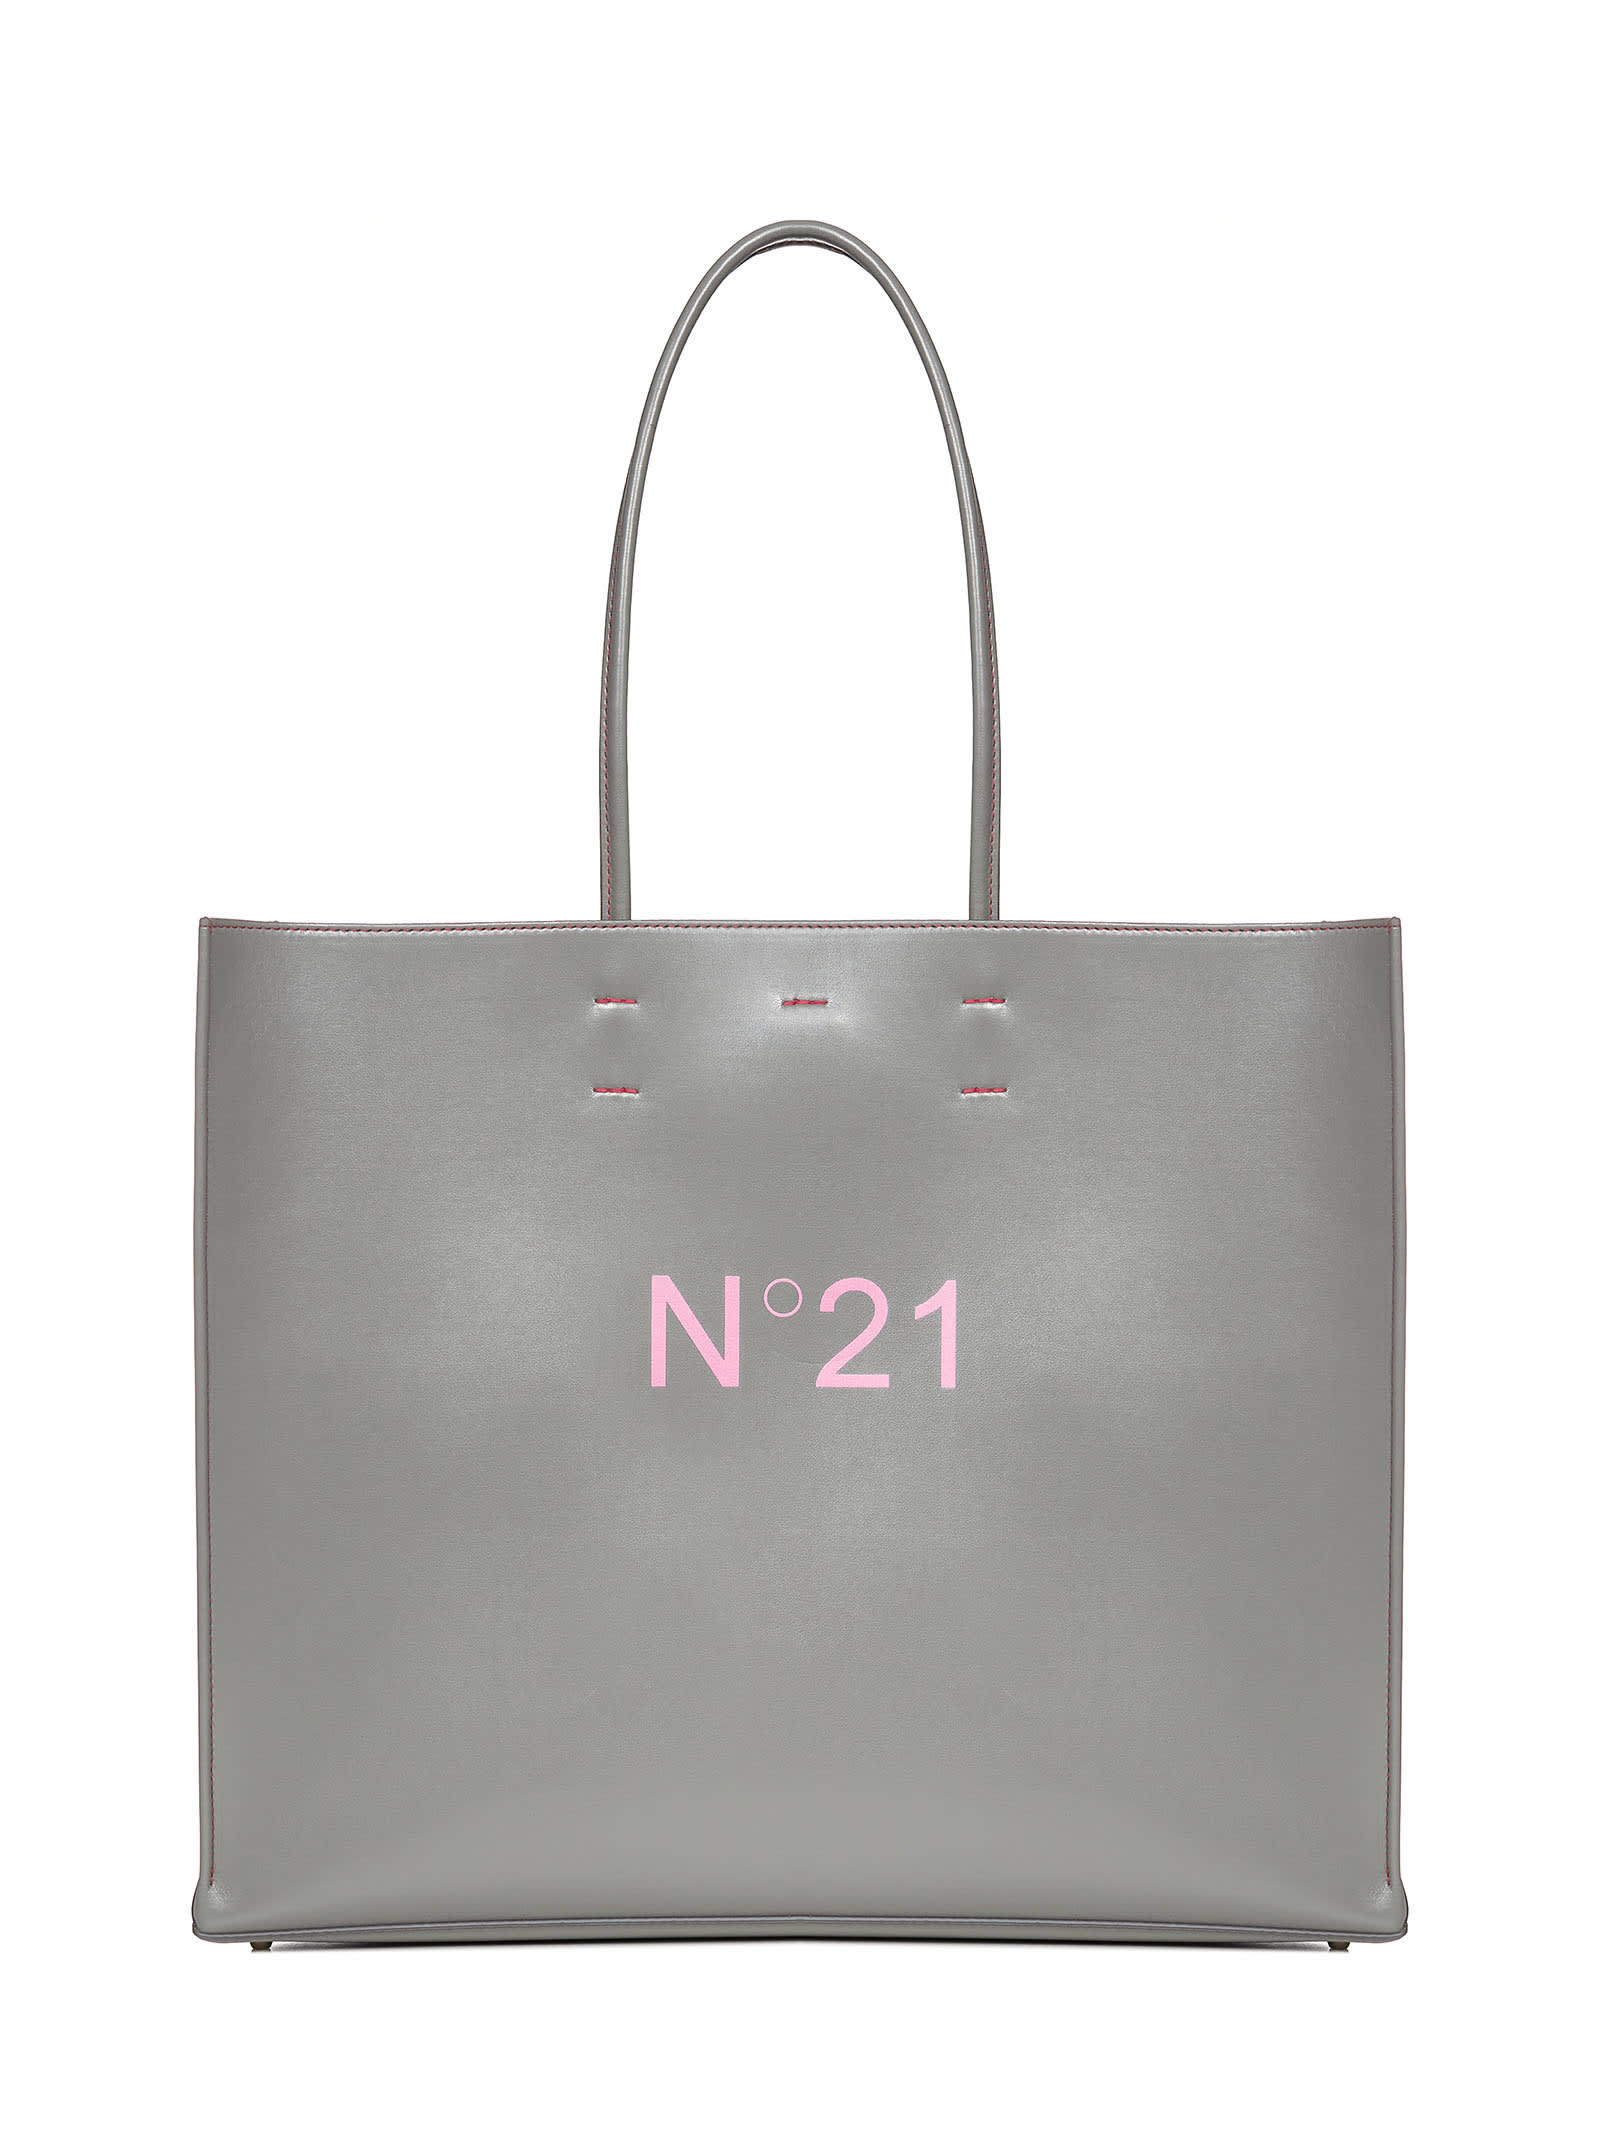 N.21 N°21 Tote Bag